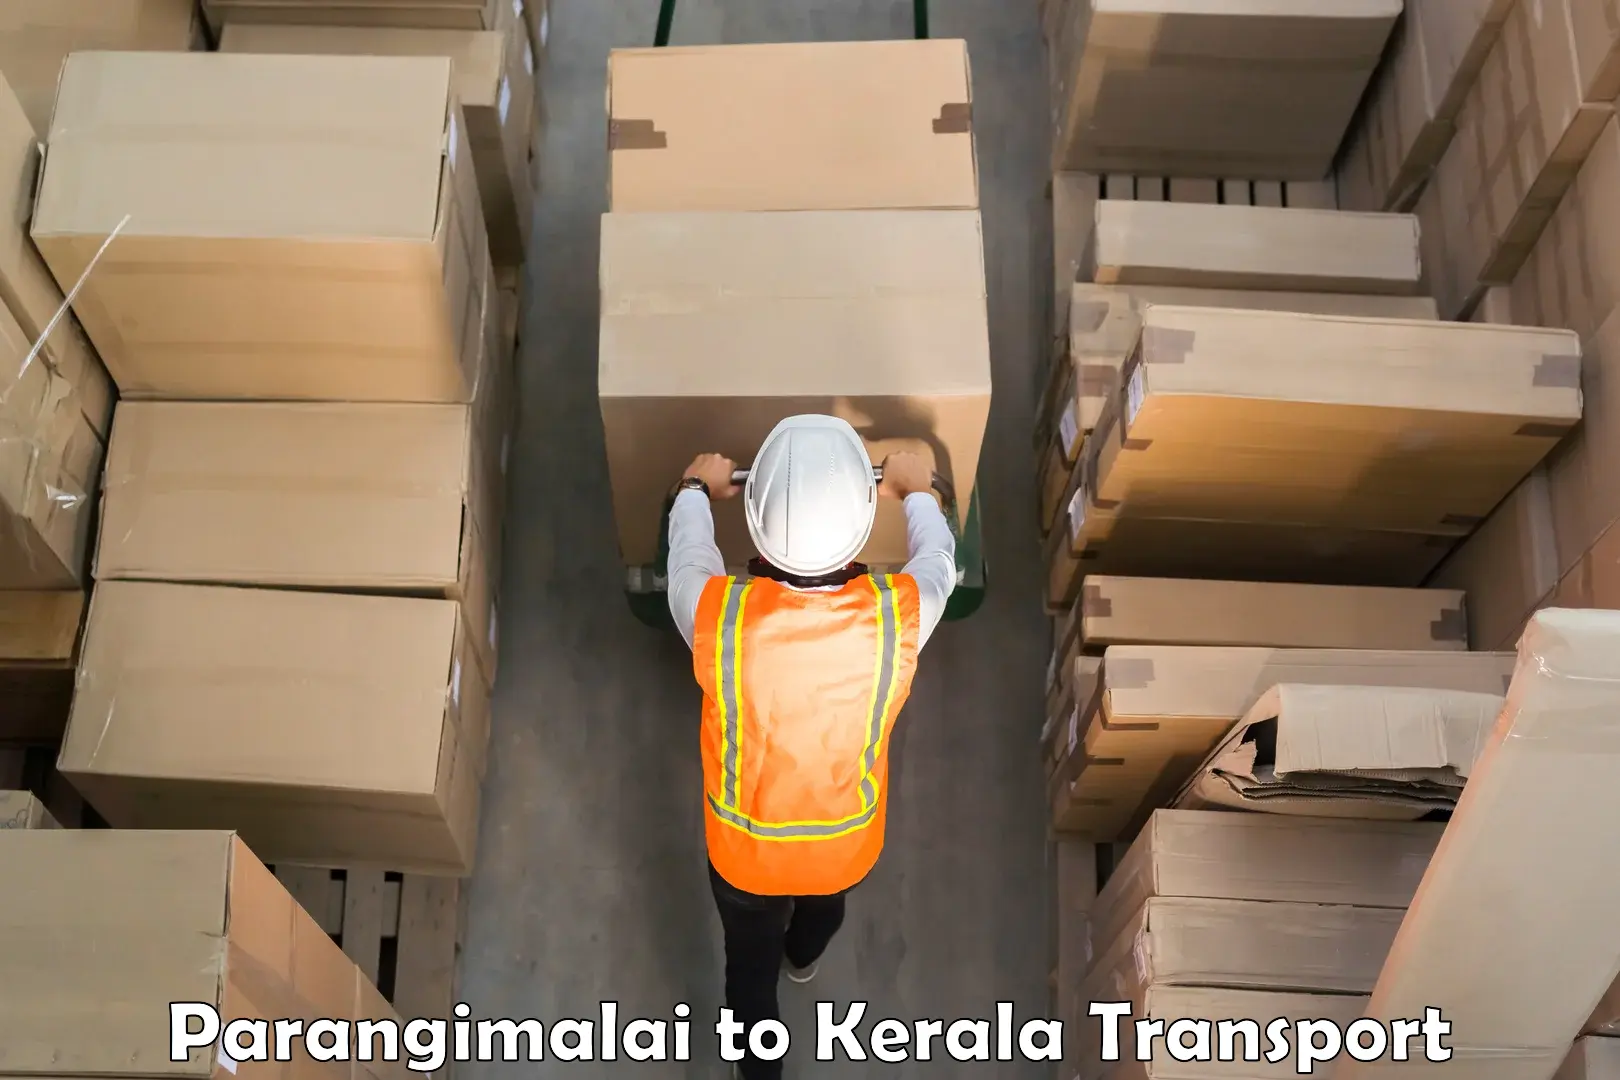 Daily transport service Parangimalai to Kottarakkara